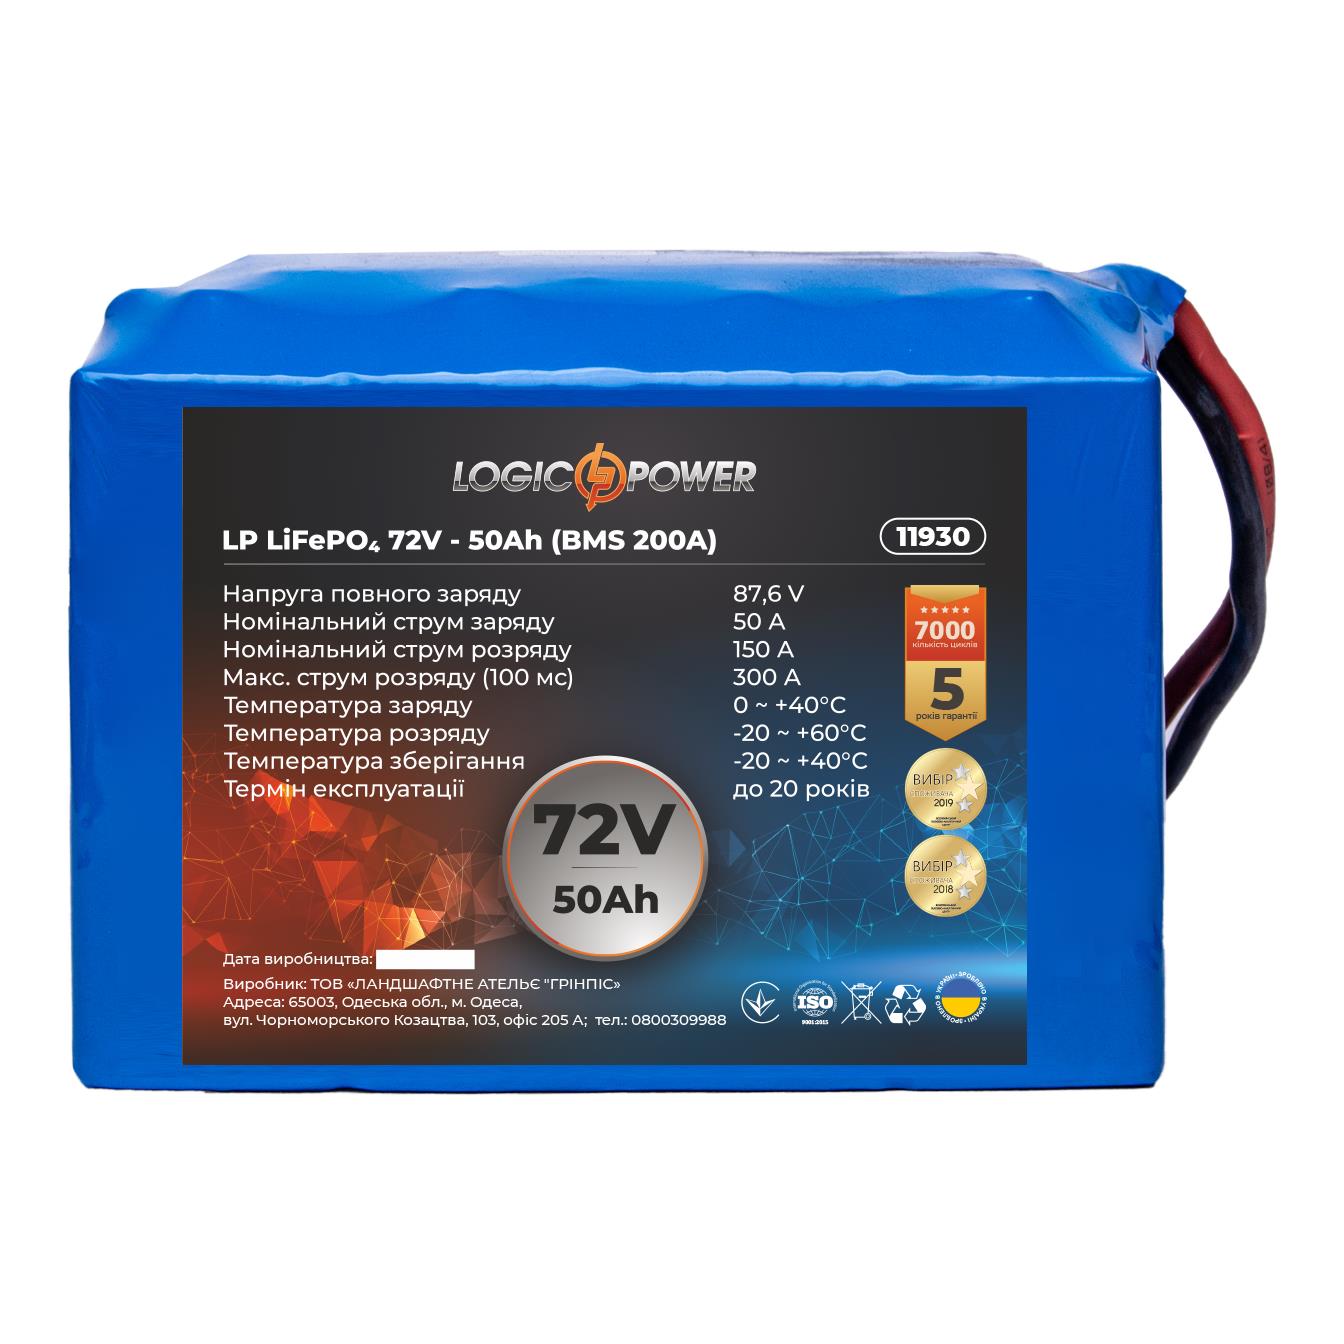 Отзывы аккумулятор литий-железо-фосфатный LogicPower LP LiFePO4 72V - 50 Ah (BMS 200A) (11930)